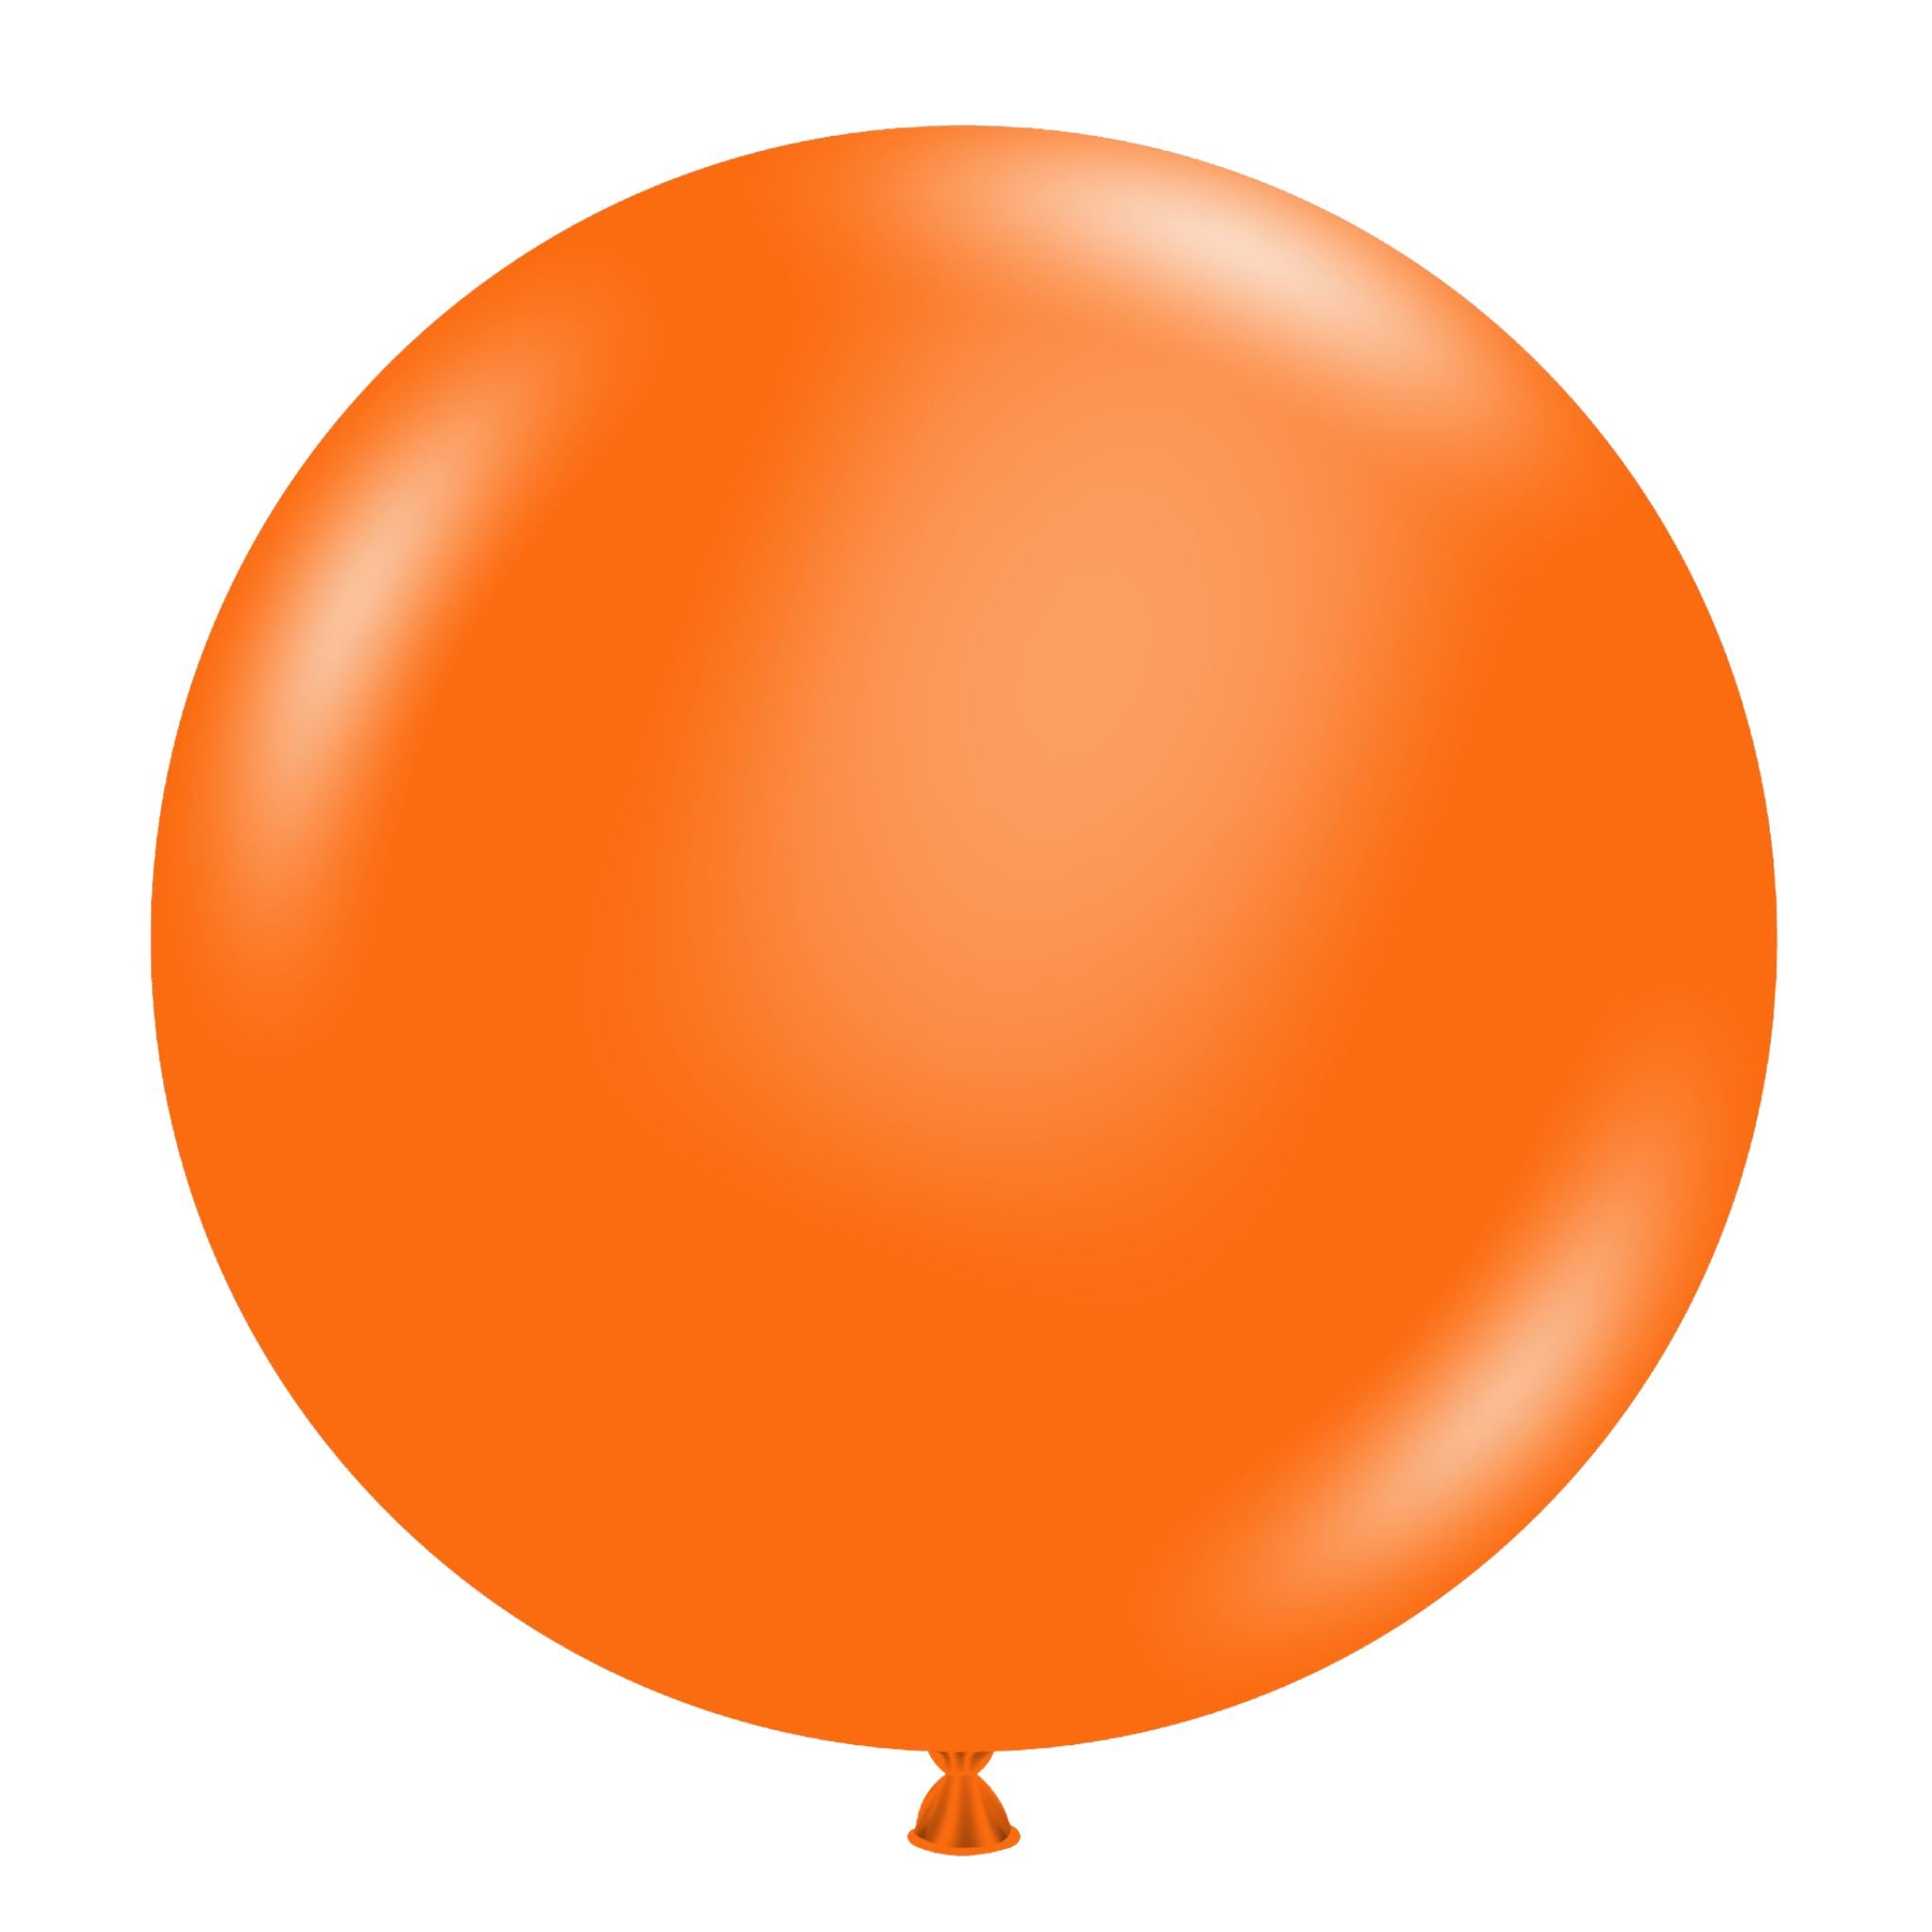 На оранжевом шаре. Шарик круглый. Круглый воздушный шар. Оранжевый шарик. Оранжевый воздушный шарик.